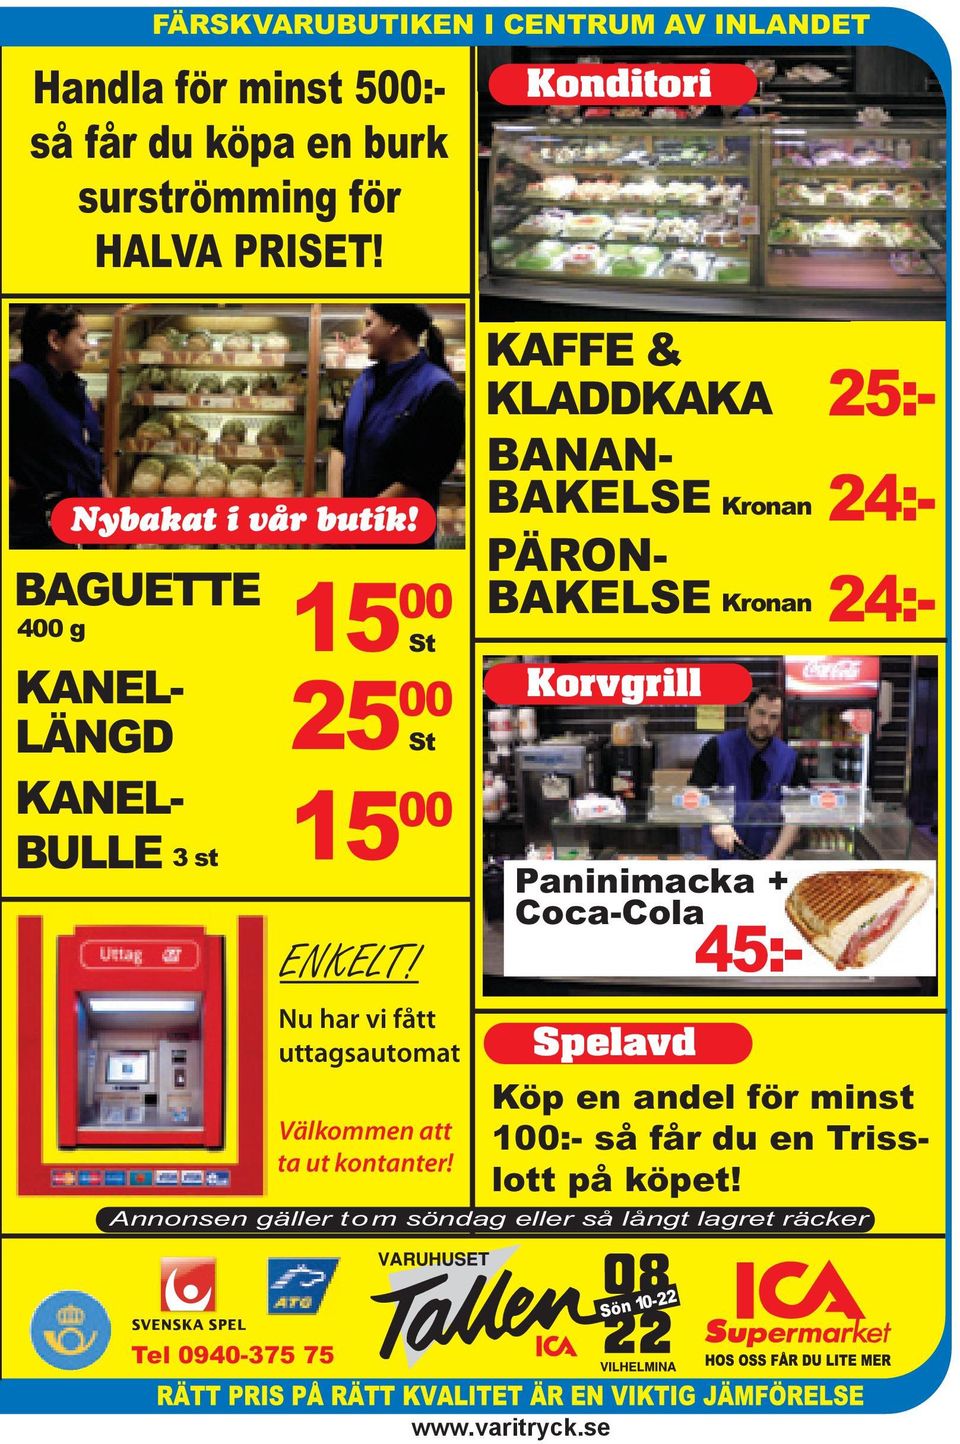 Konditori Korvgrill Spelavd Kronan Kronan Paninimacka + Coca-Cola 45:- Annonsen gäller tom söndag eller så långt lagret räcker BAGUETTE